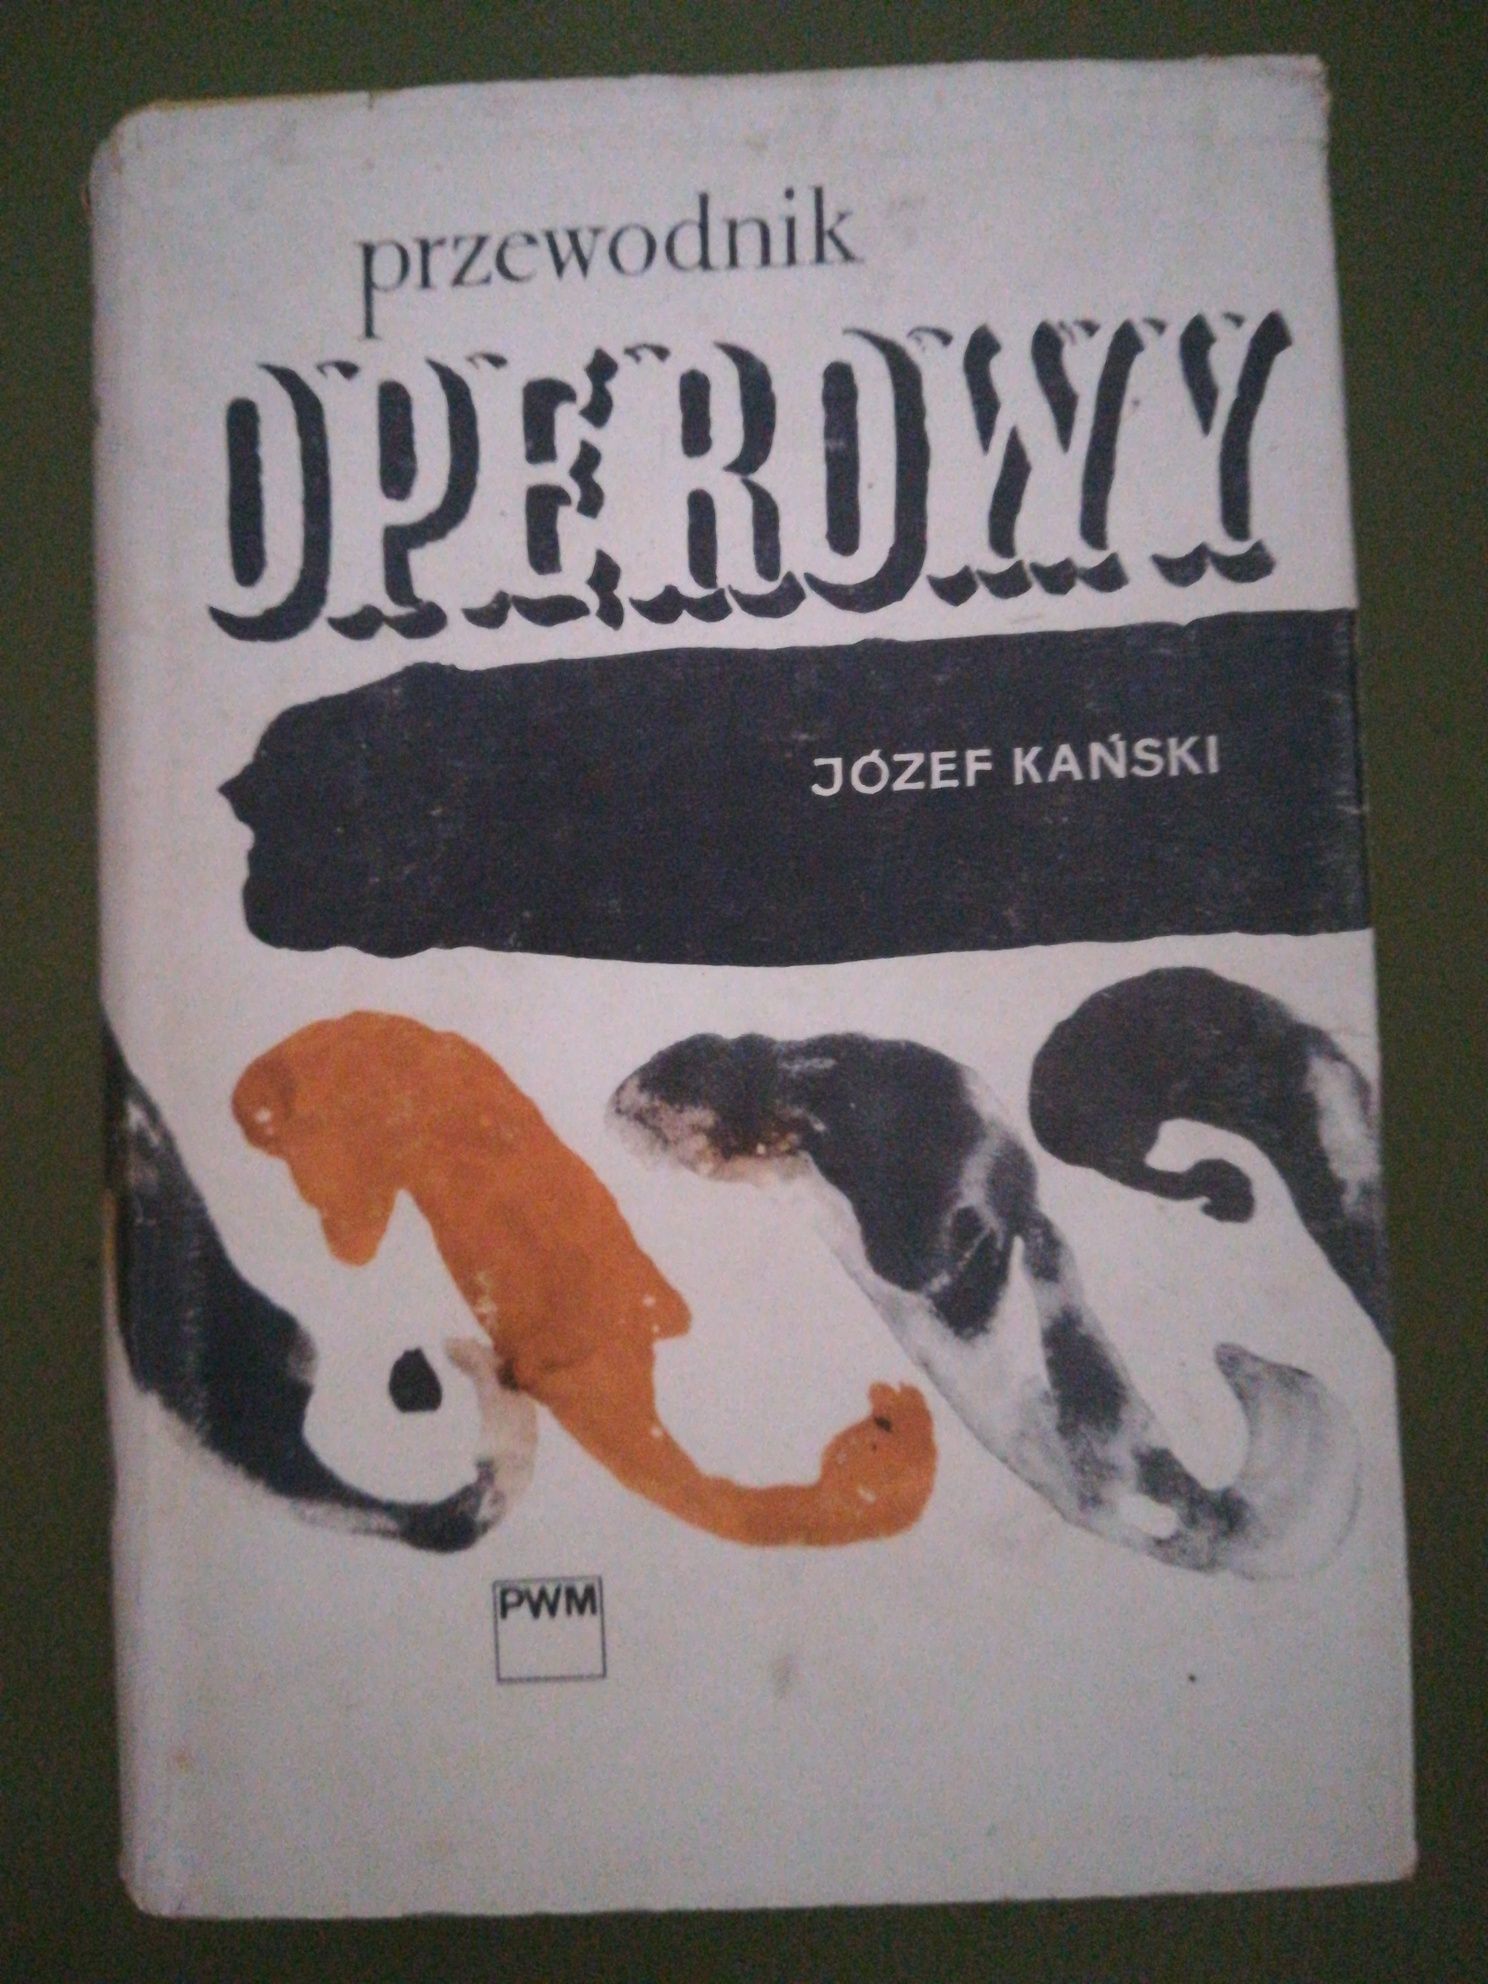 książka "Przewodnik operowy" Józef Kański